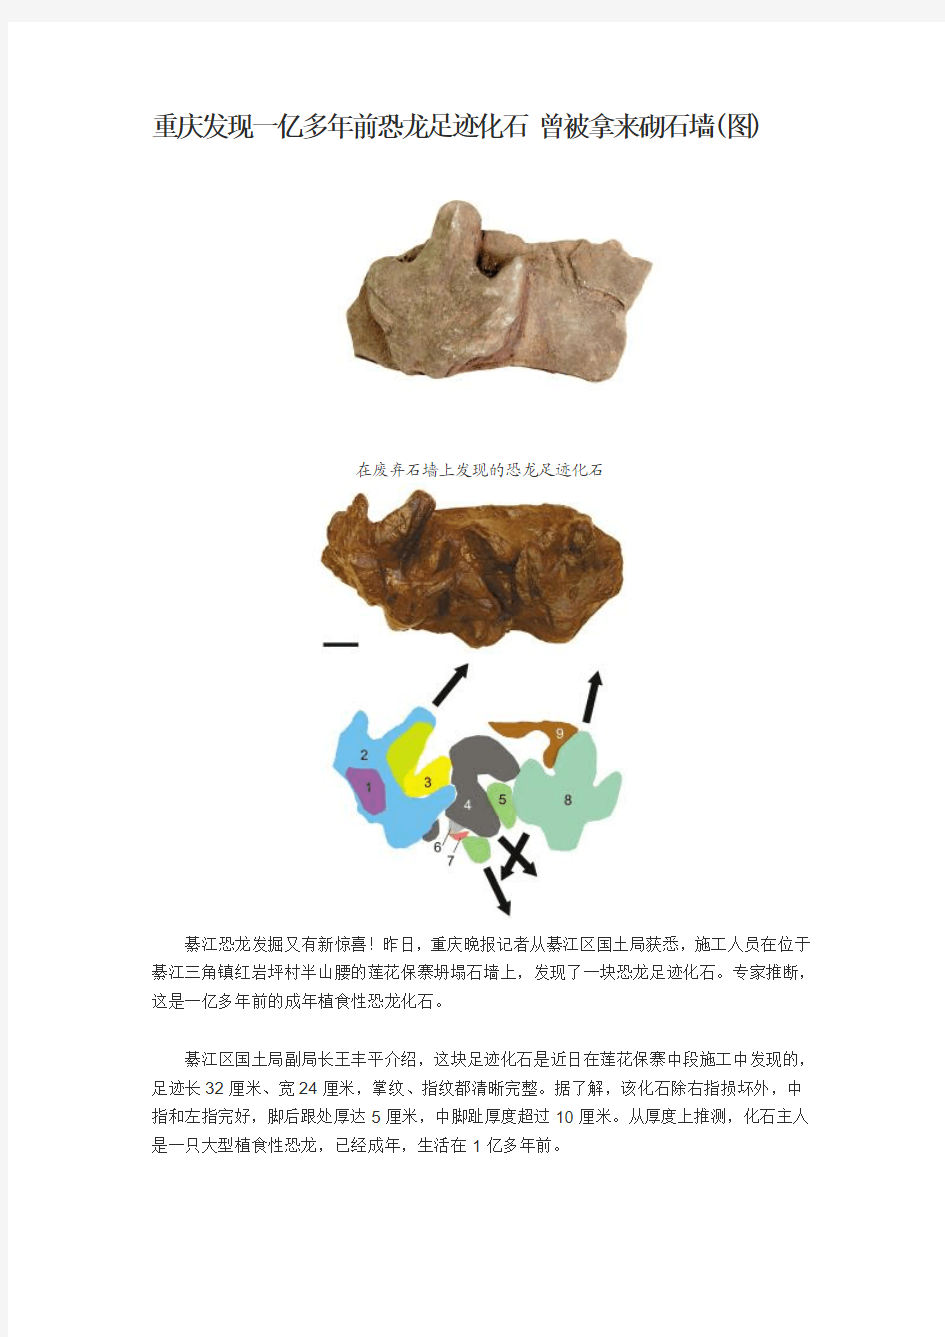 重庆发现一亿多年前恐龙足迹化石 曾被拿来砌石墙(图)